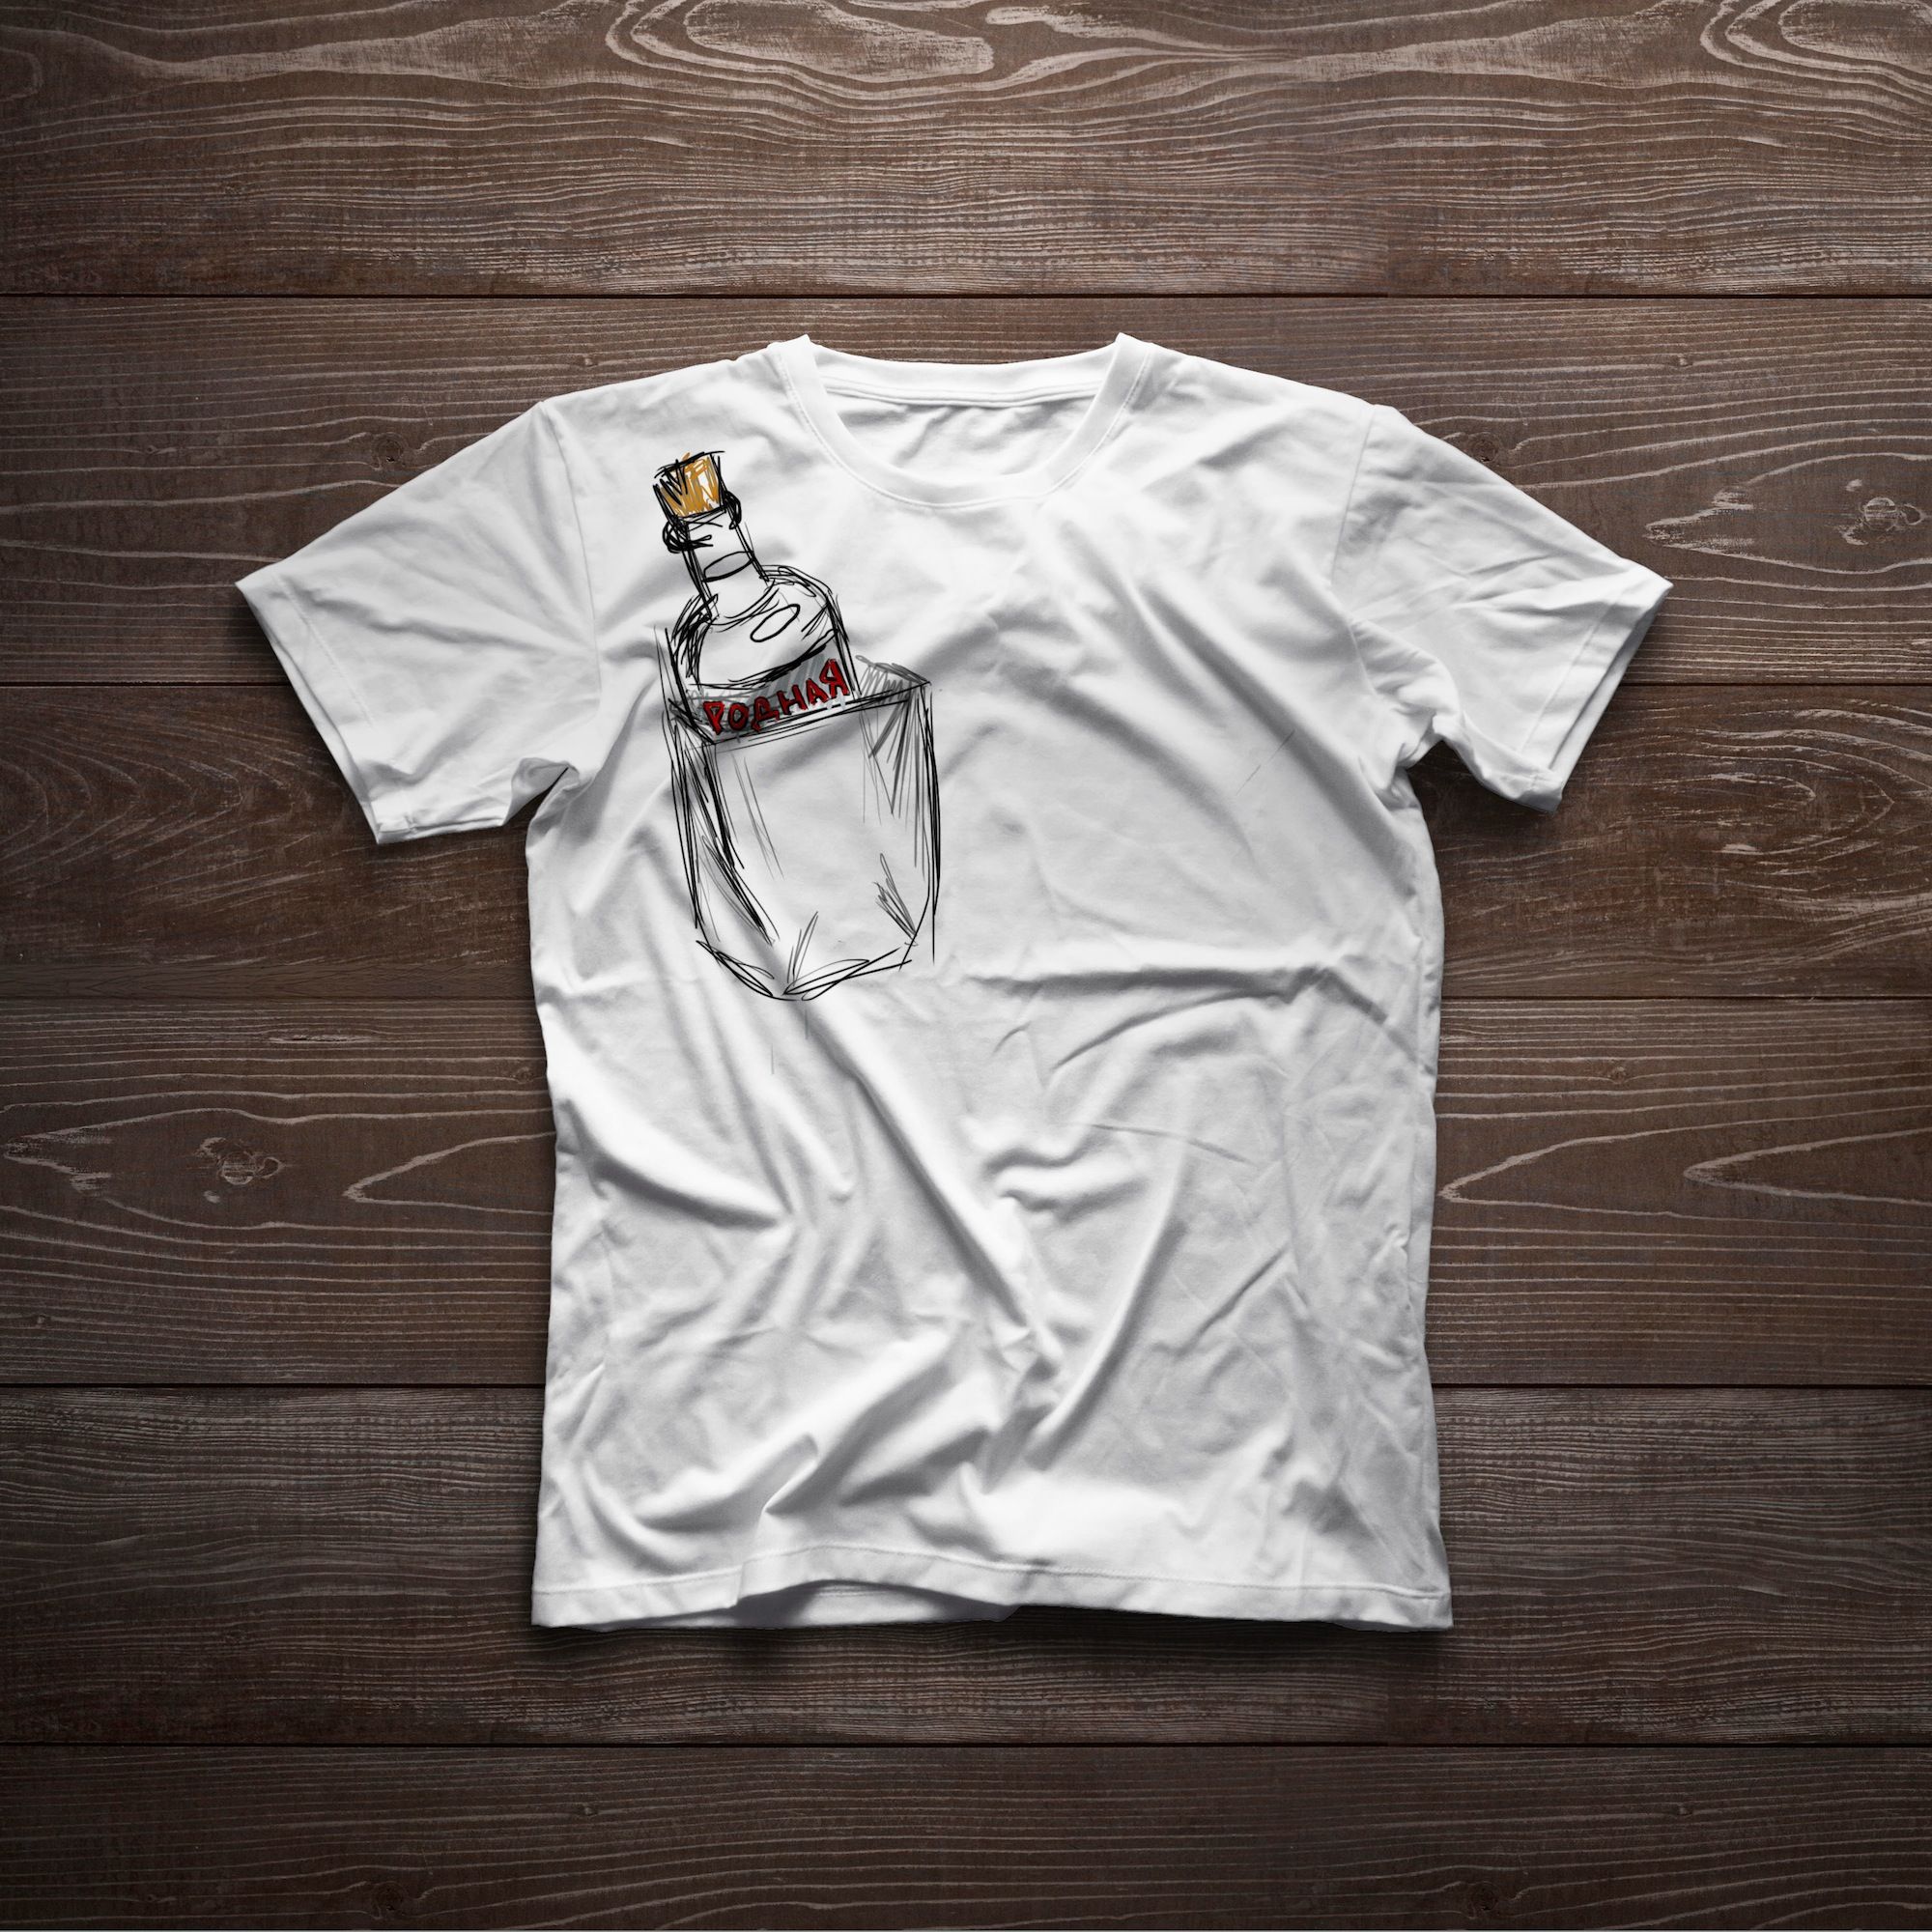 Дизайн футболок для проекта Патриот - дизайнер Empire